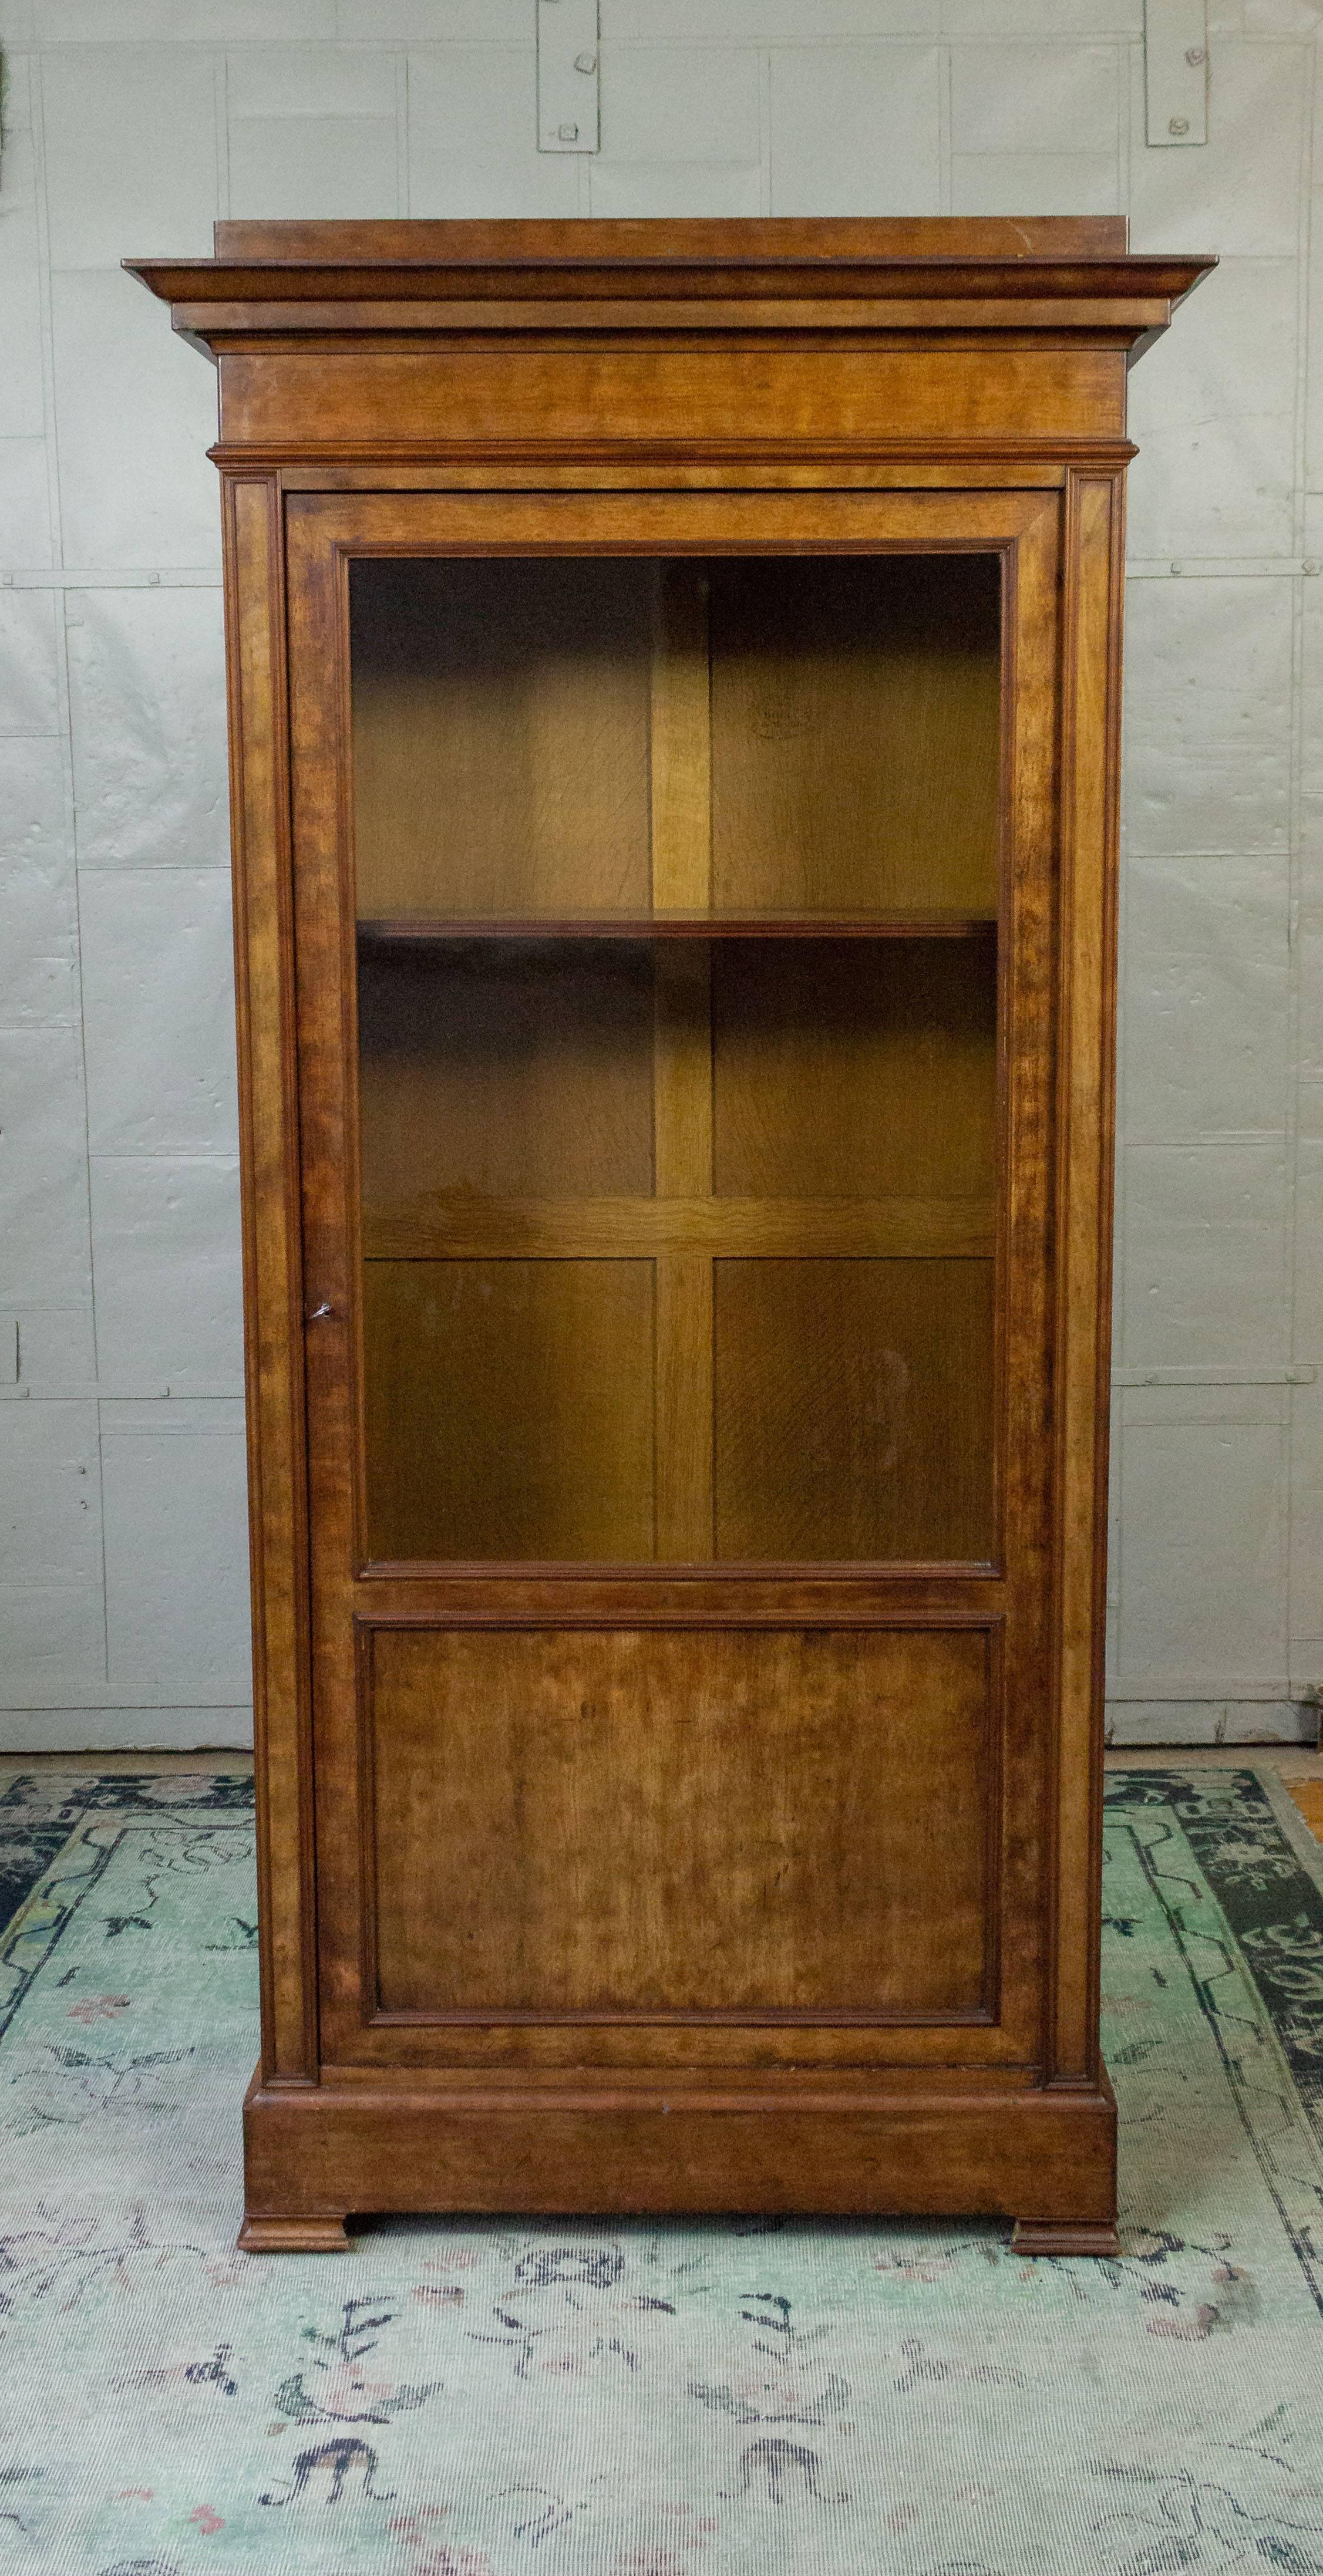 französisches Bücherregal aus Nussbaumholz aus dem 19. Jahrhundert mit originaler verschließbarer Glastür. Die Innentiefe des Möbelstücks beträgt 12,5 Zoll und hat zwei Einlegeböden. Zusätzliche Regale können bei Bedarf nachgebaut werden. Insgesamt